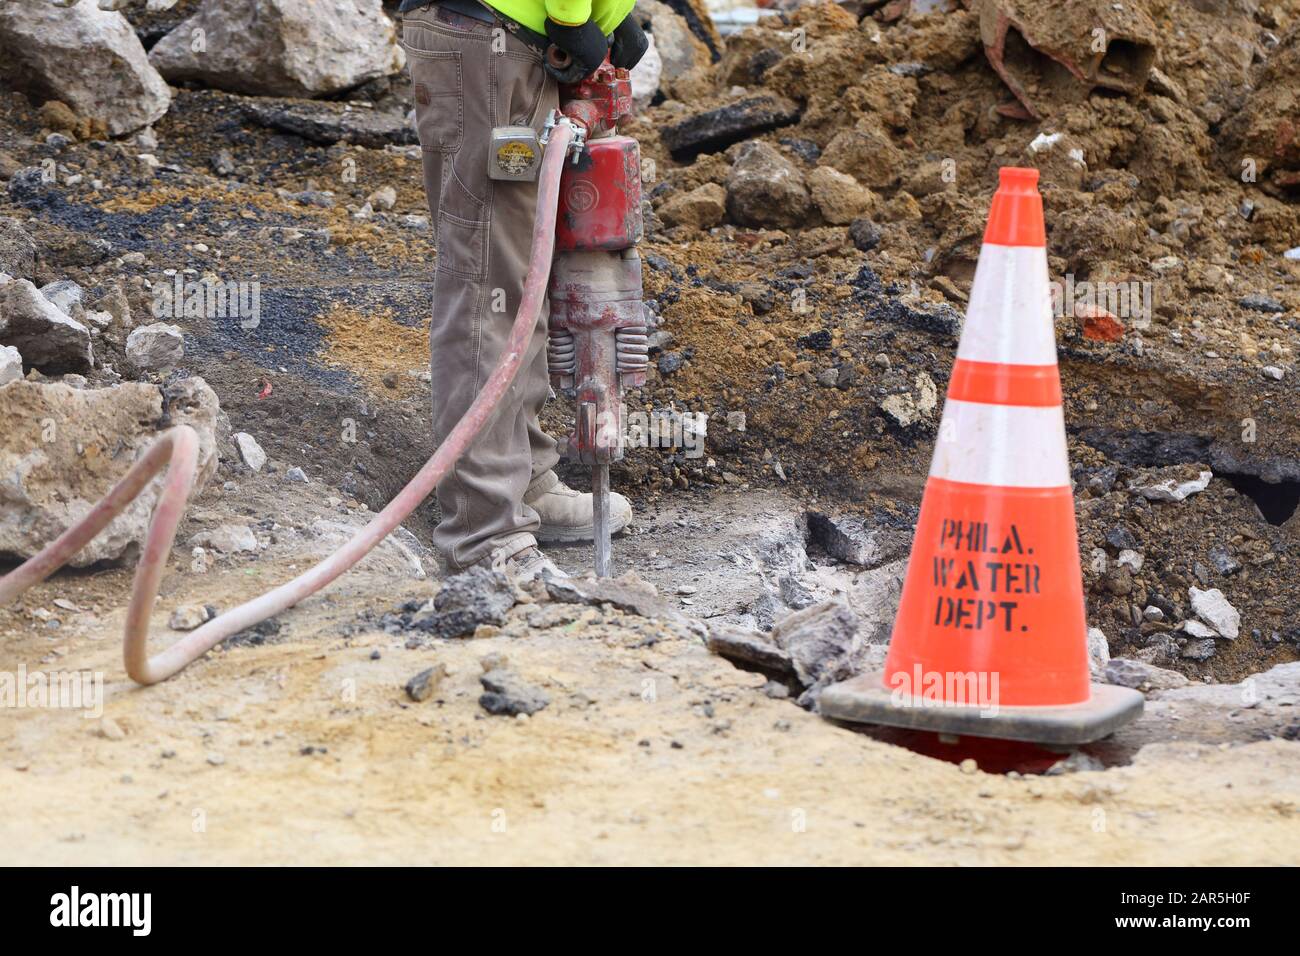 Un trabajador de la construcción del Departamento de Agua de Filadelfia opera un martillo neumático para abrir una calle y reparar una tubería de agua. Foto de stock